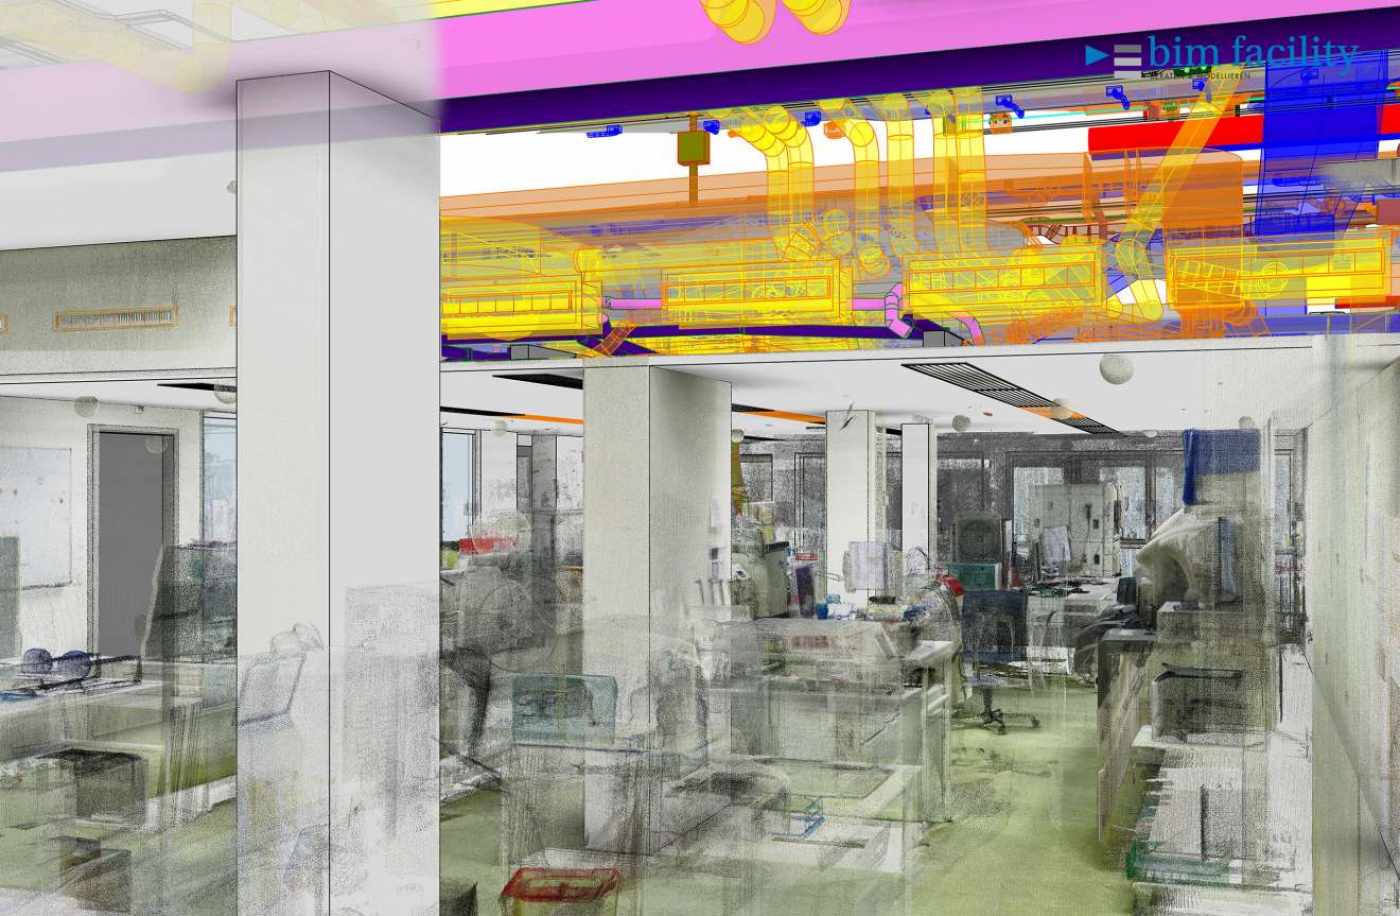 Claraspital, BIM inkl. Gebäudetechnik ab Bestand, 3D Laserscan, 3D- / BIM- Modellierung aus Punktwolke